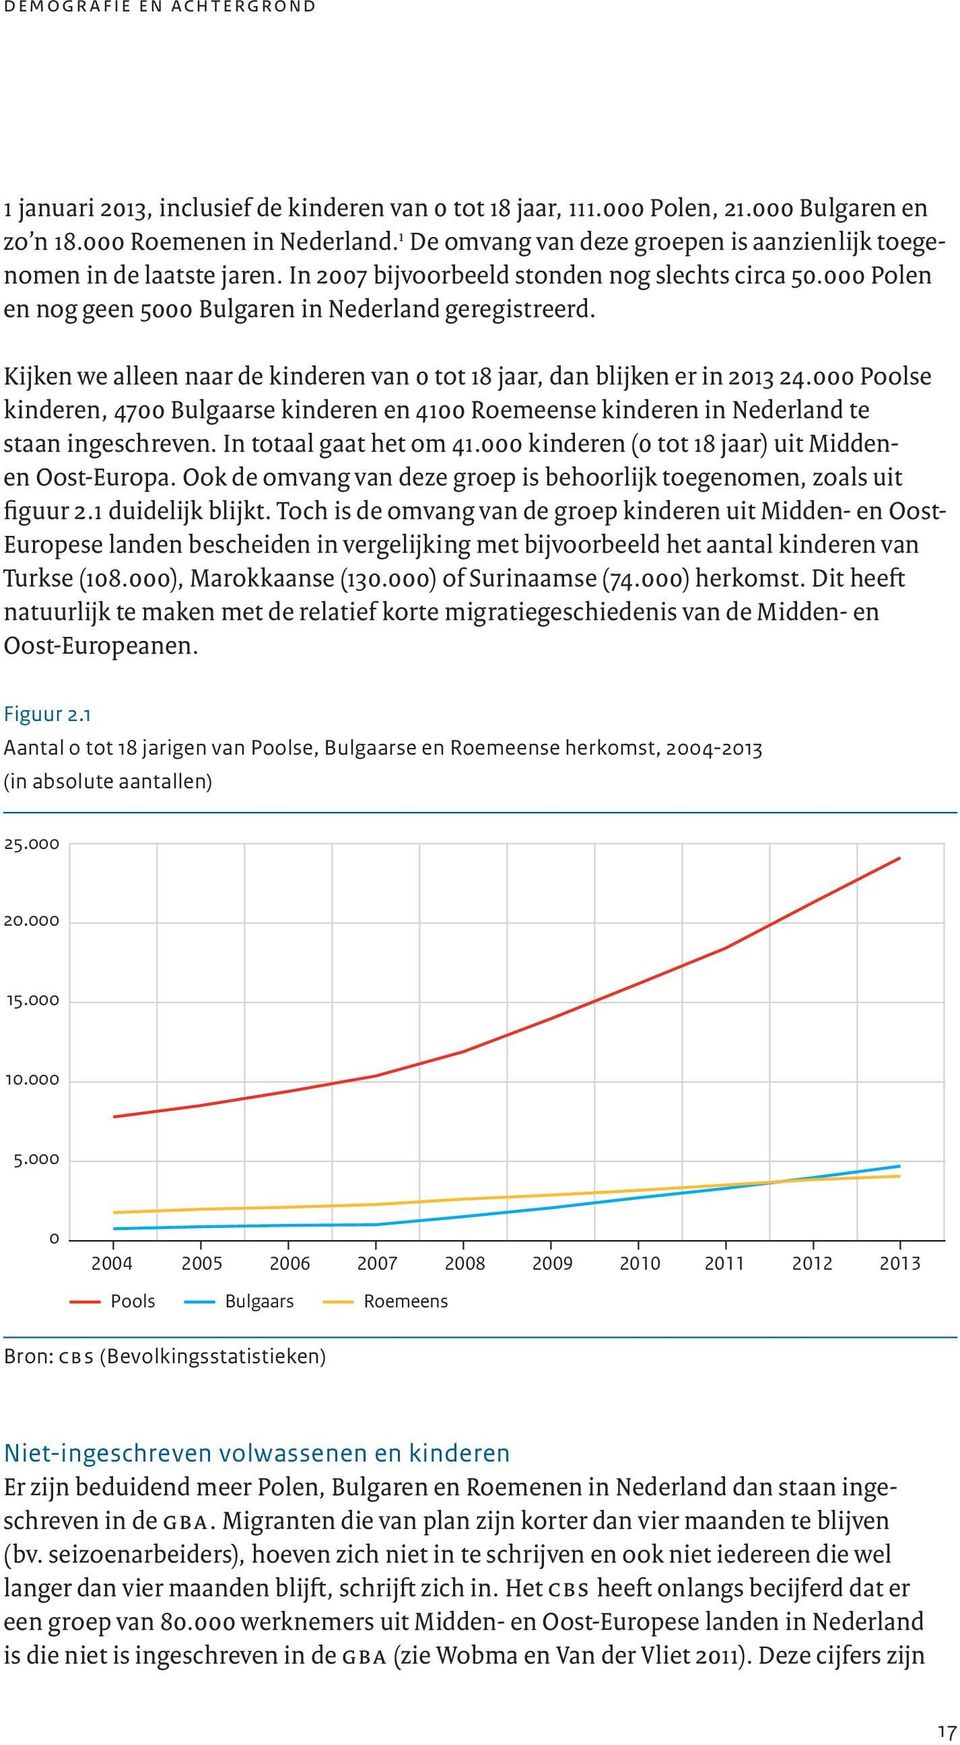 Kijken we alleen naar de kinderen van 0 tot 18 jaar, dan blijken er in 2013 24.000 Poolse kinderen, 4700 Bulgaarse kinderen en 4100 Roemeense kinderen in Nederland te staan ingeschreven.